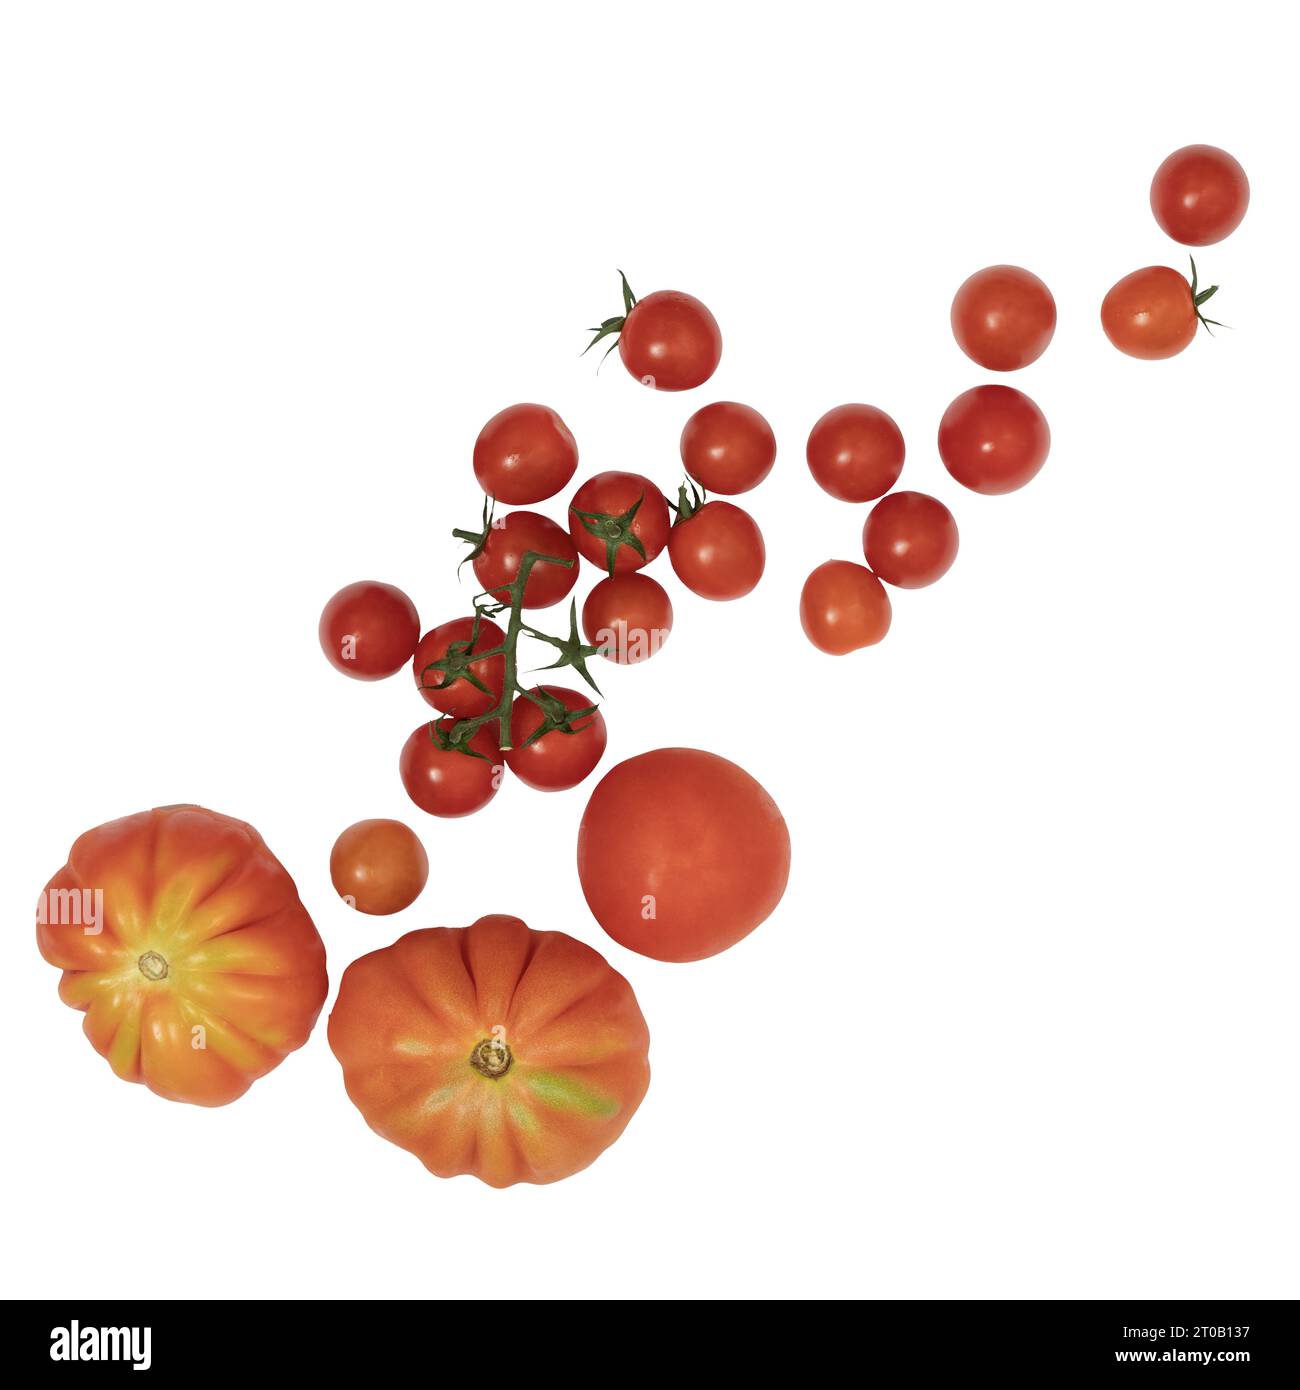 algunos tipos de tomates sobre un fondo transparente Foto de stock